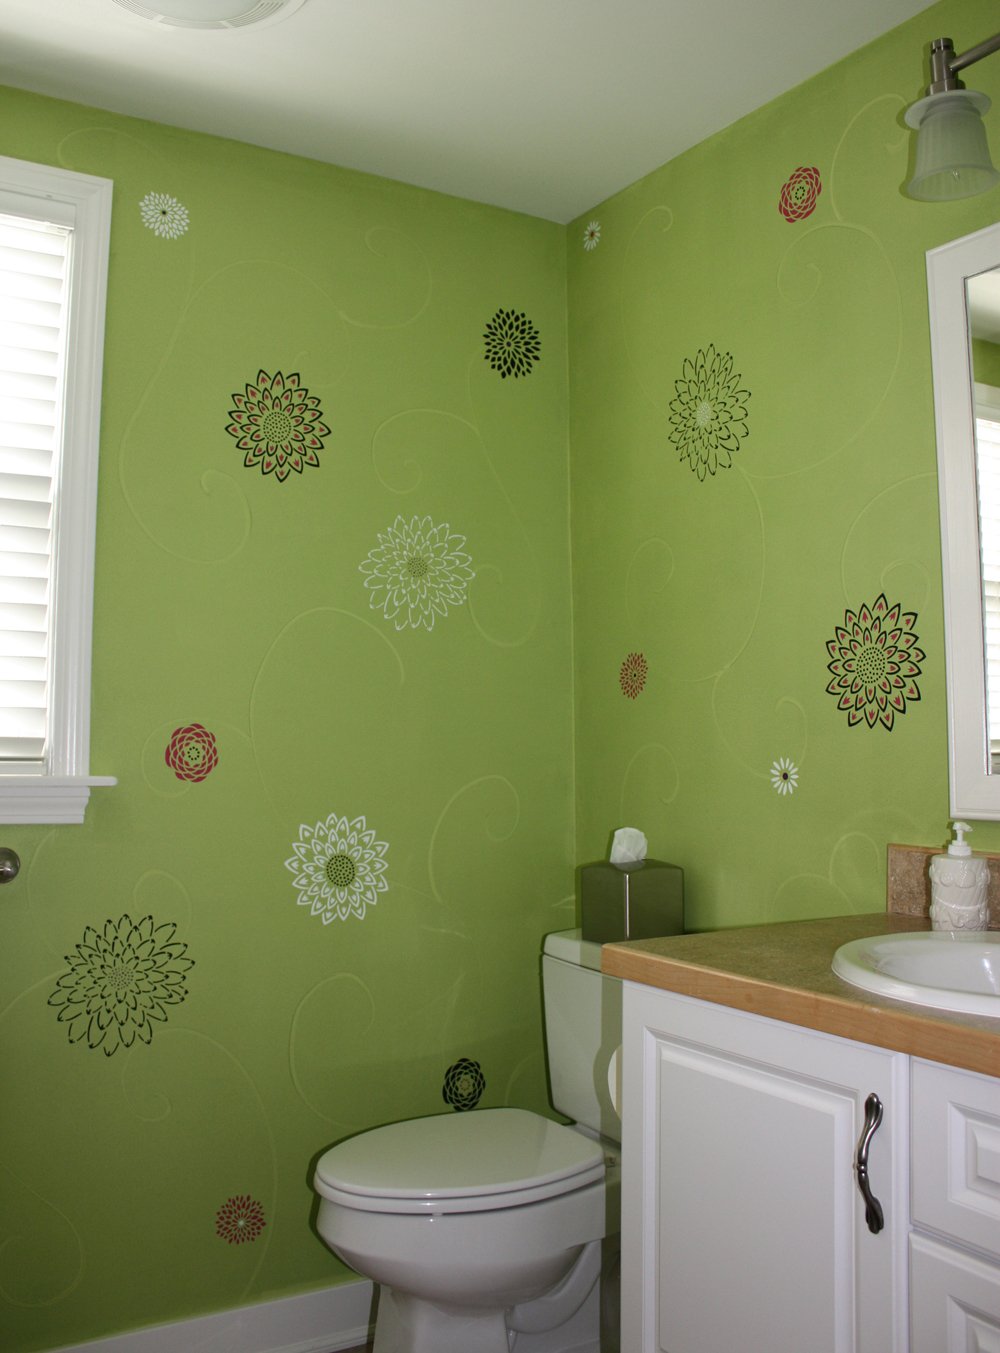 Какой краской можно покрасить в ванной. Декор стен в ванной краской. Покраска стен в ванной. Покрашенные стены. Варианты покраски ванной.